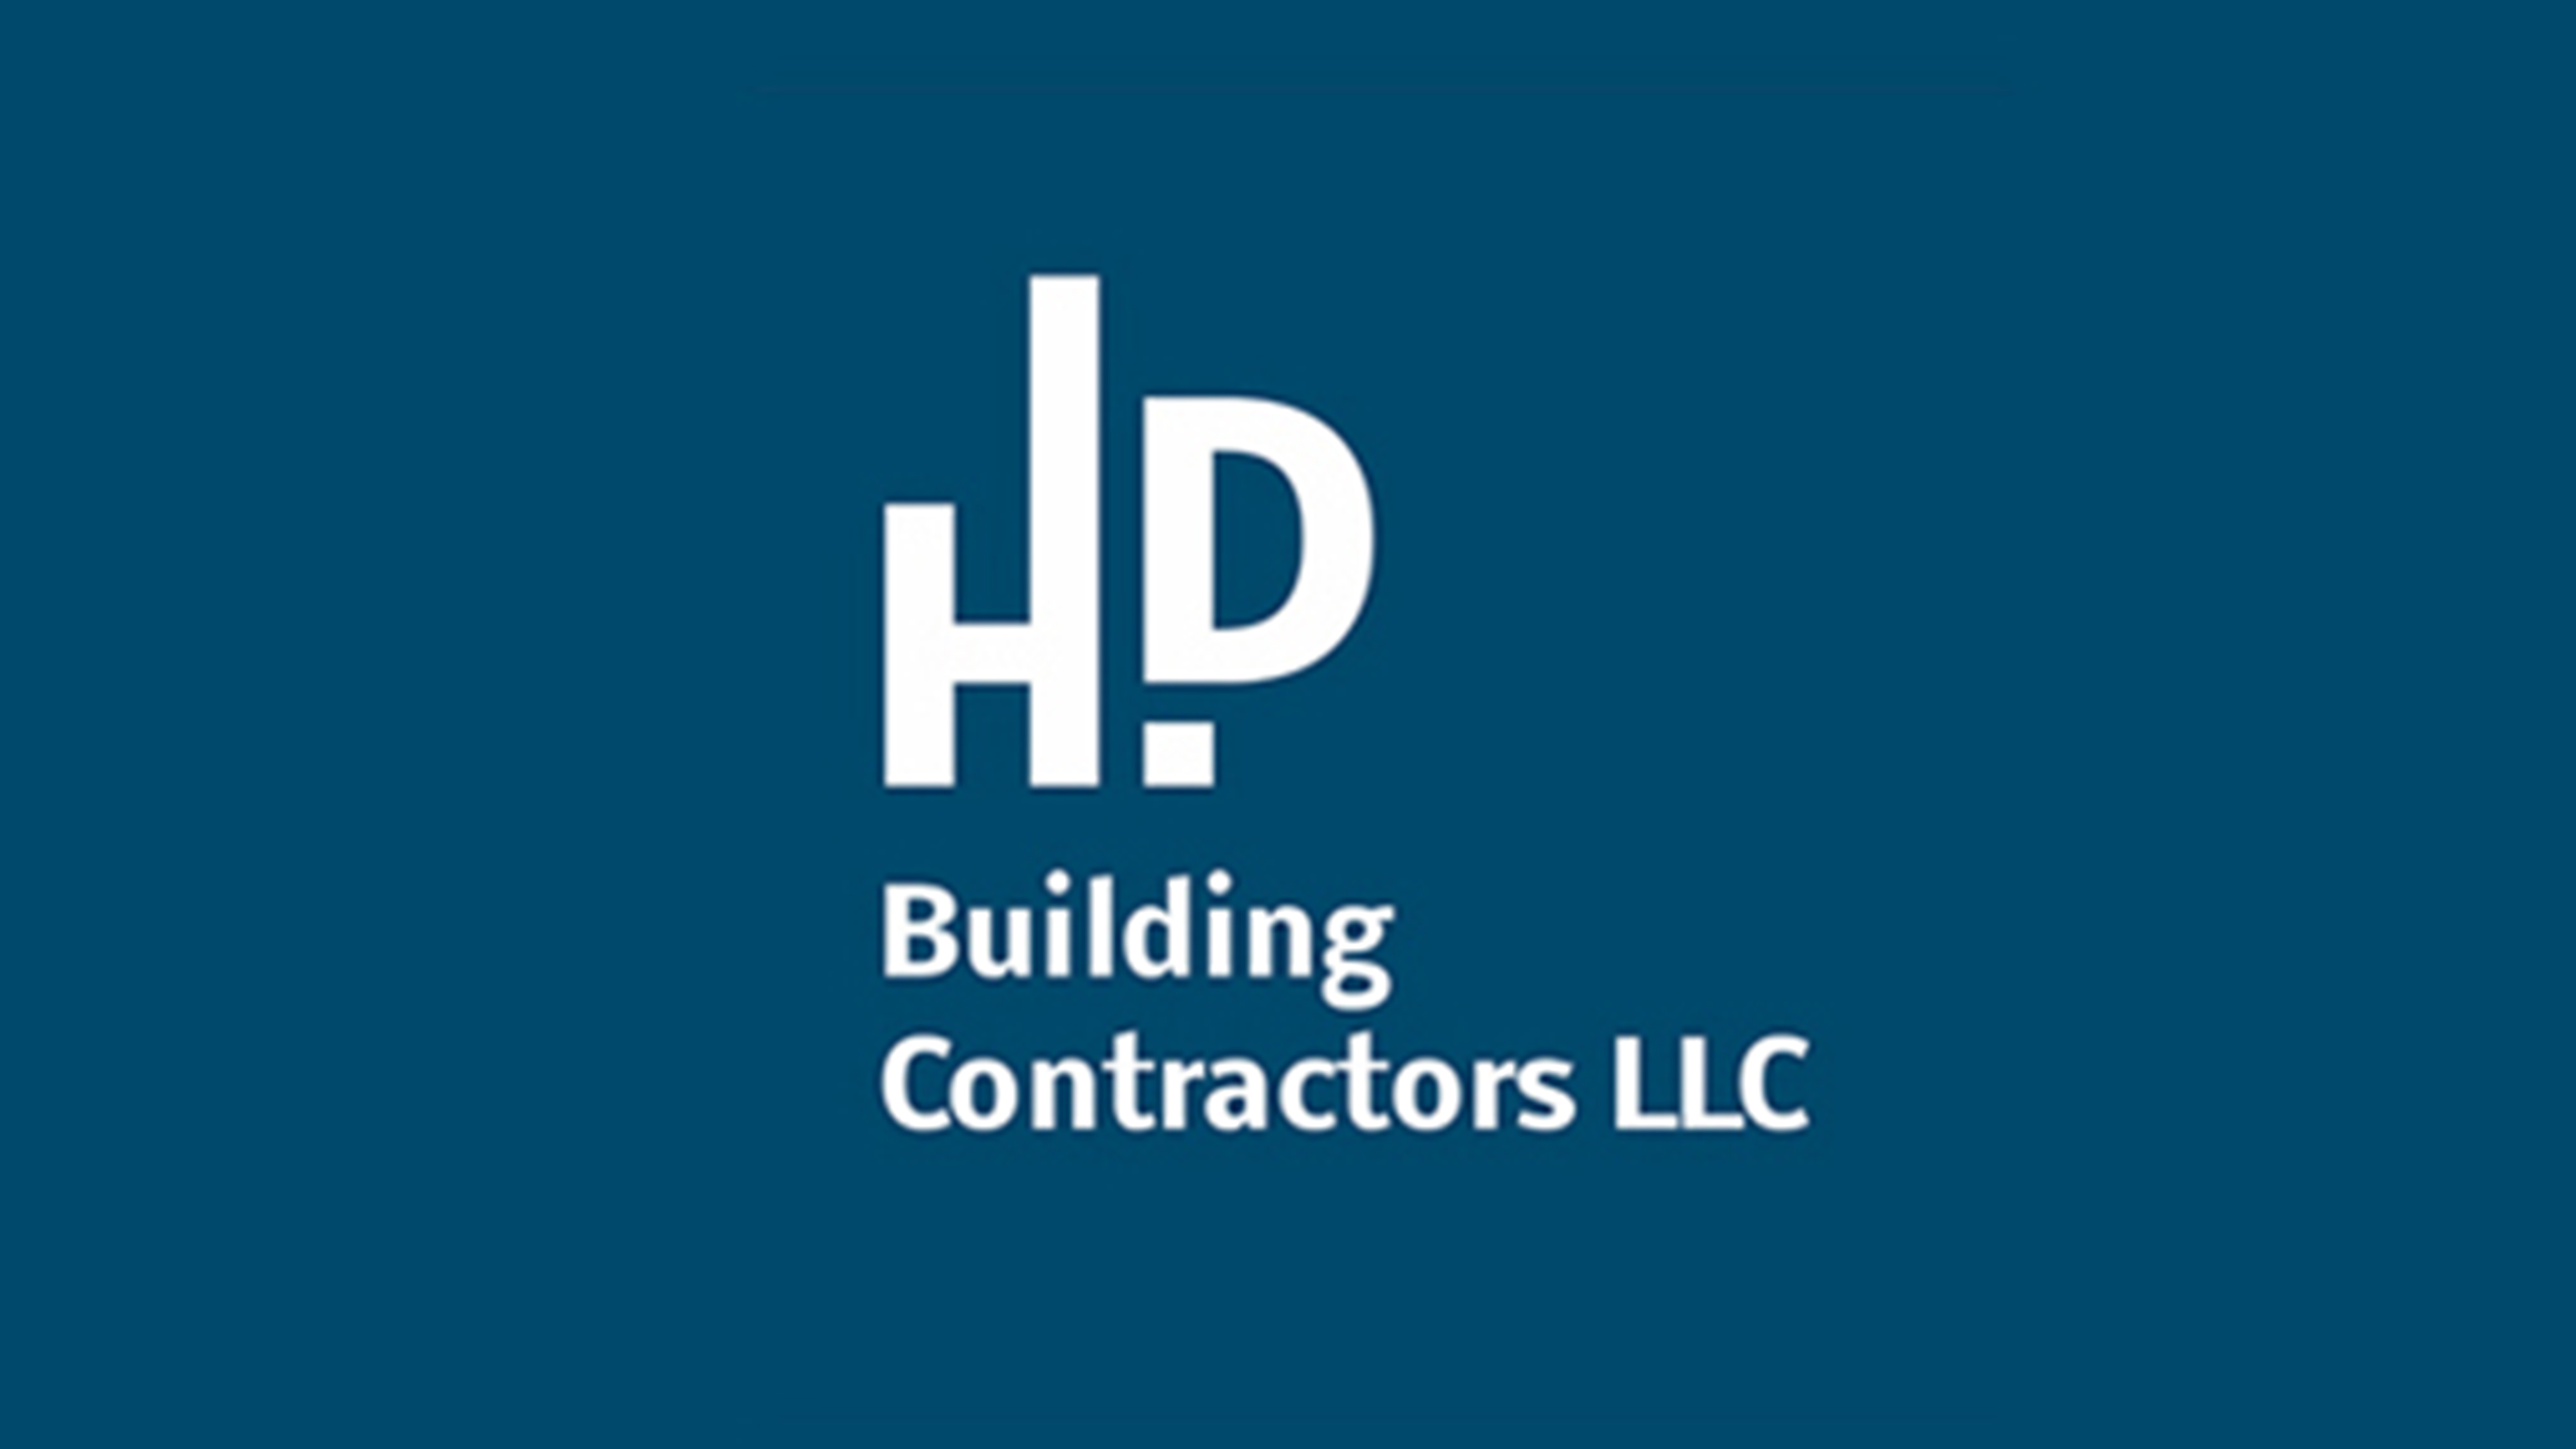 HPD Building Contractors LLC marca